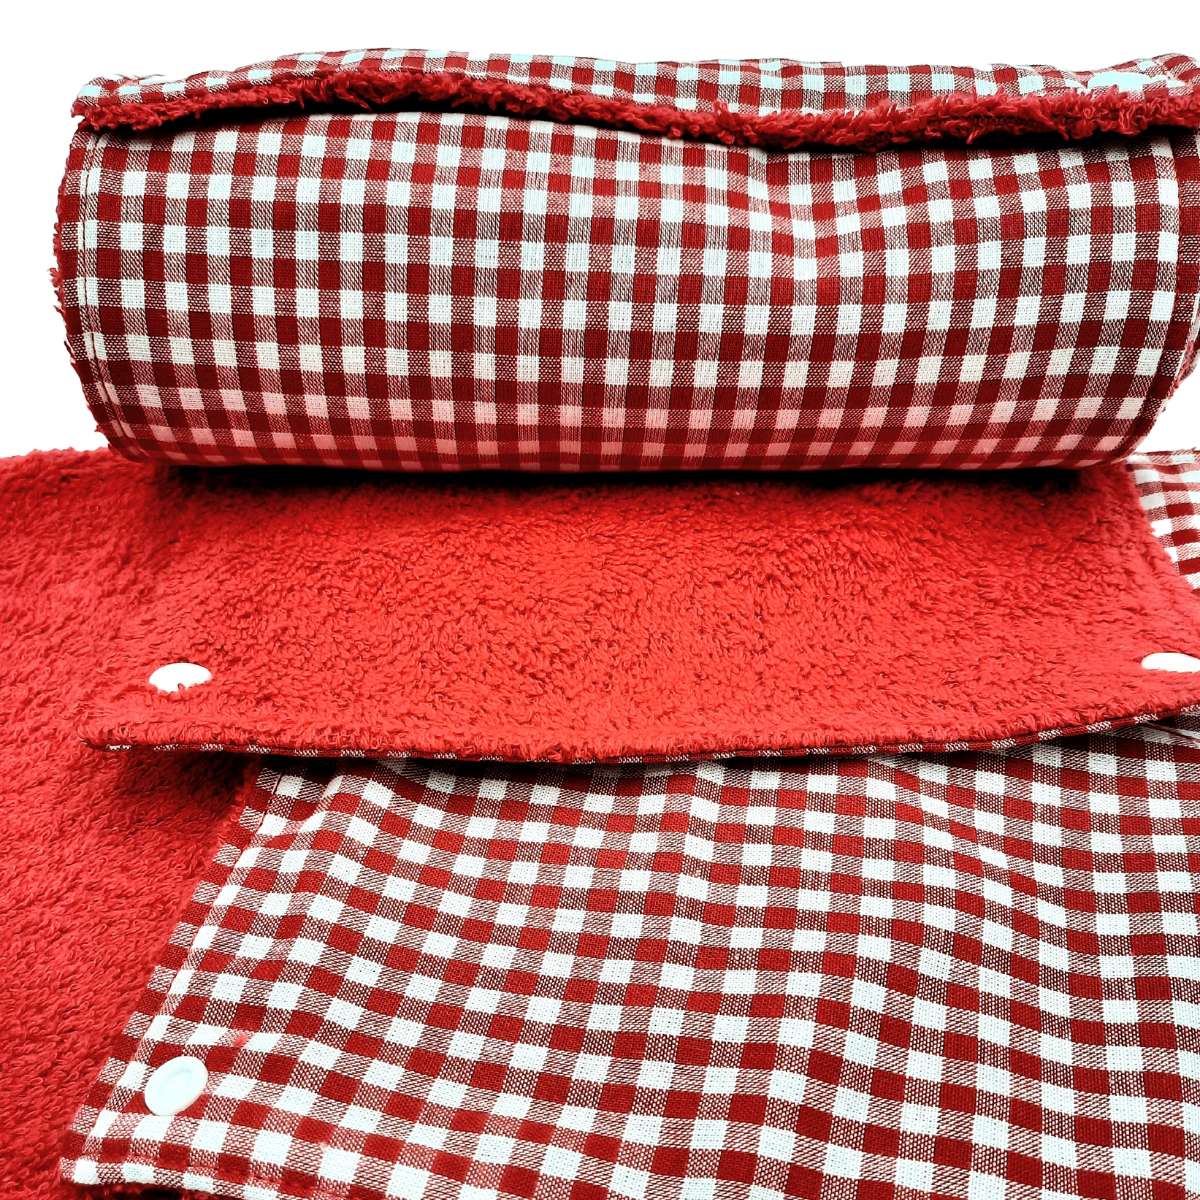 essui tout lavable en tissu a carreau rouge et blanc veganame